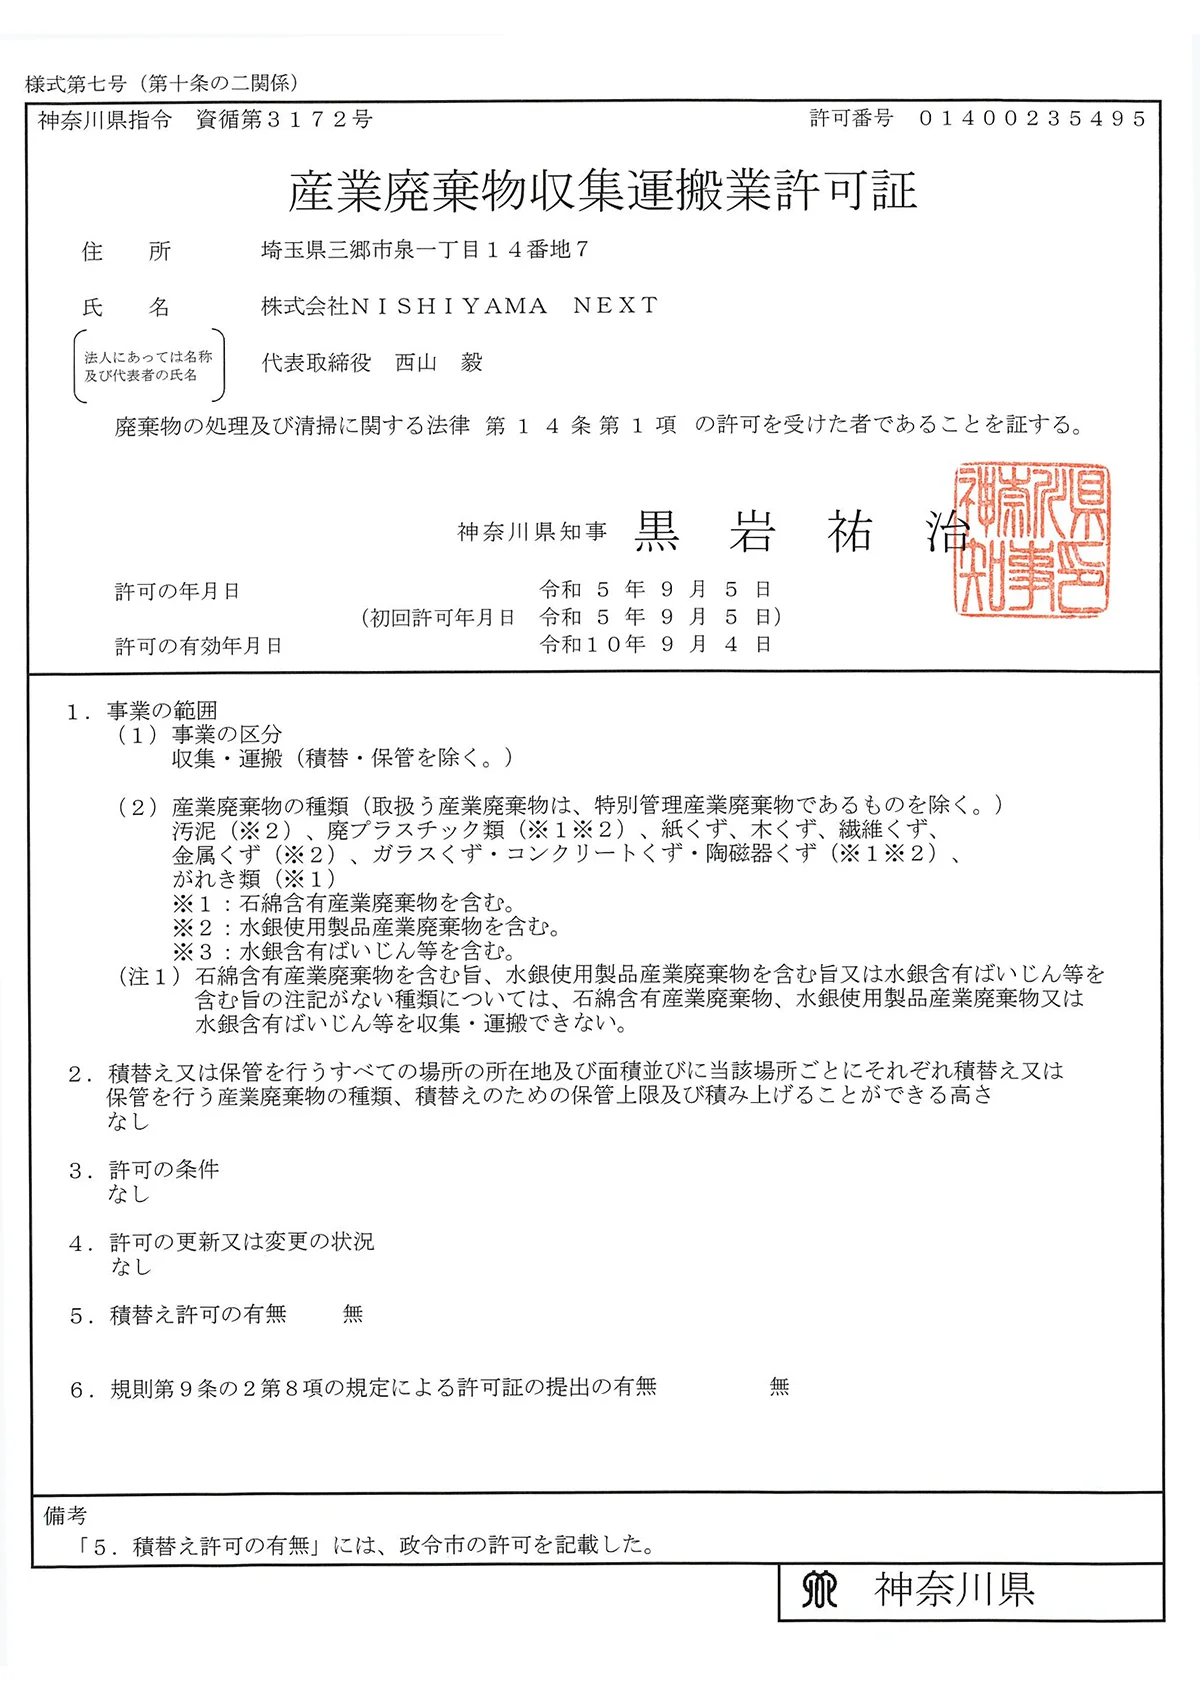 神奈川県 - 産業廃棄物収集運搬許可証